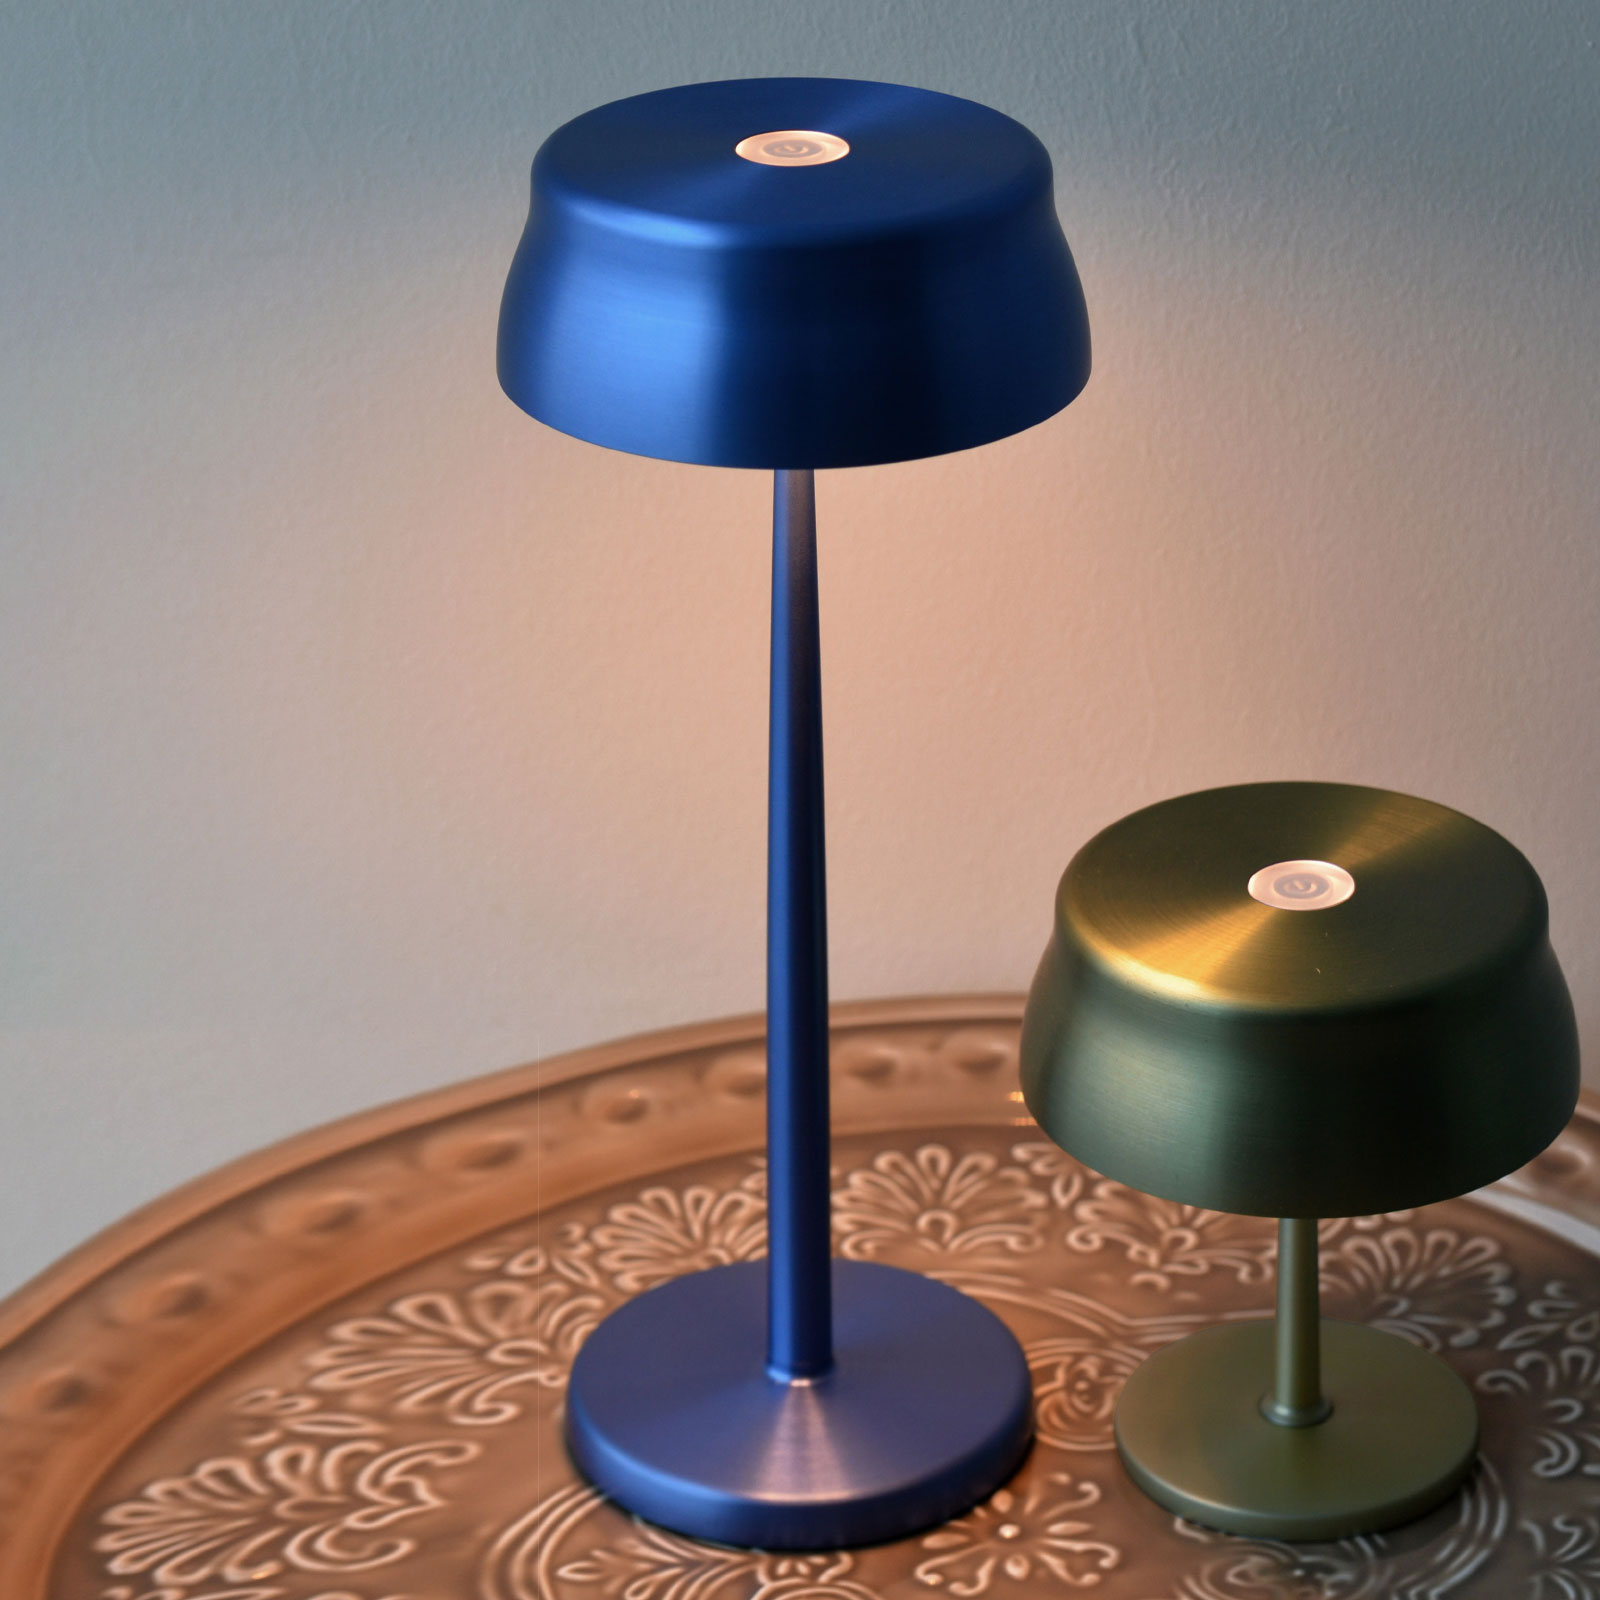 Zafferano Sister Light LED-pöytävalaisin, ladattava akku, sininen